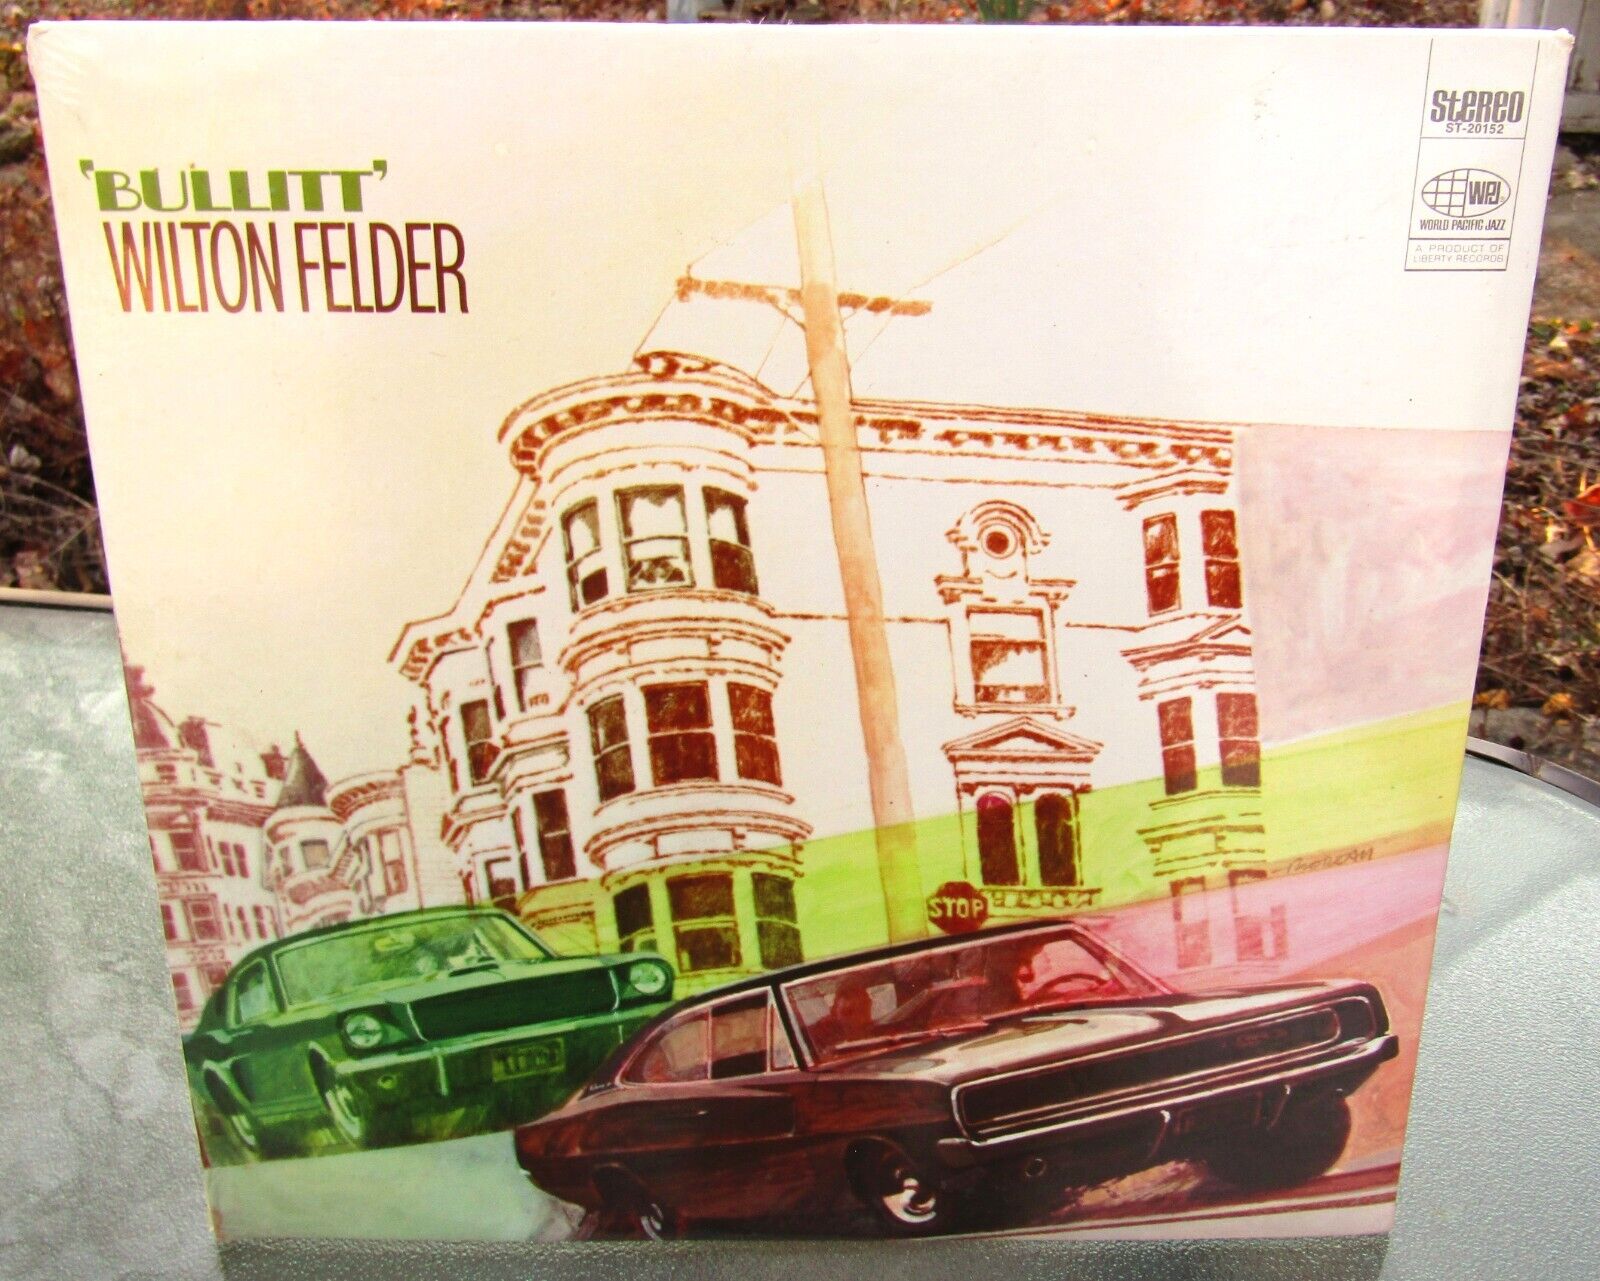 1969 World Pacific Jazz Wilton Felder BULLITT #ST-20152 SEALED Steve McQueen WOW